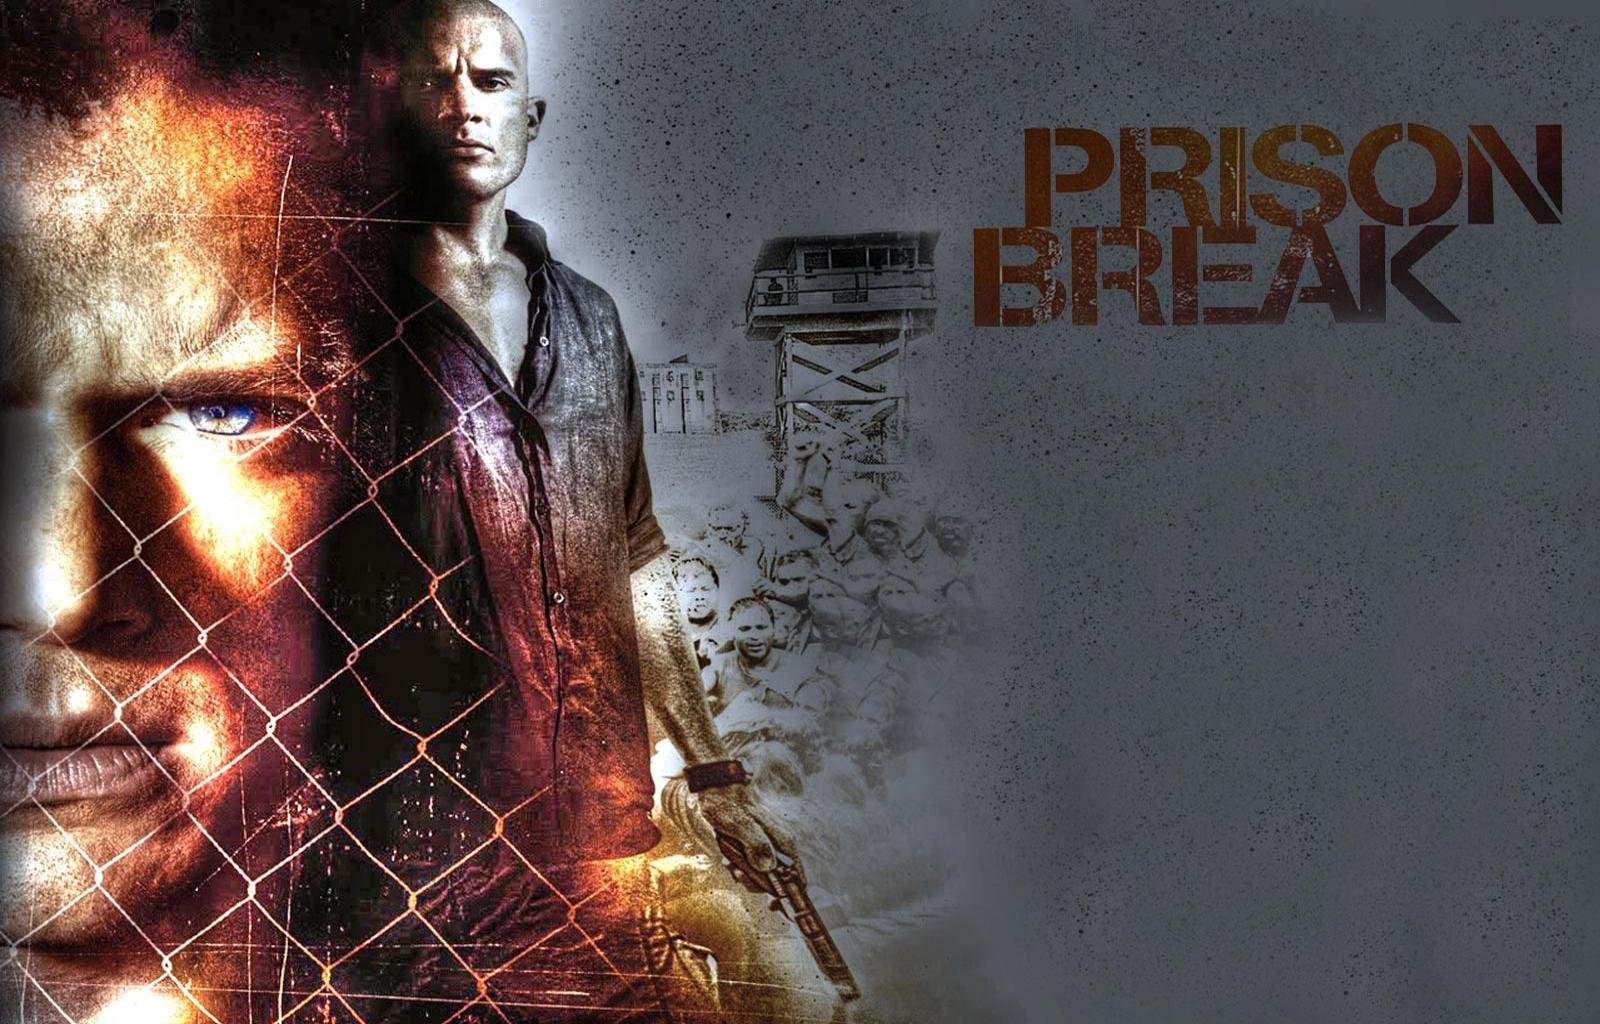 Prison Break wallpaper HD for desktop background